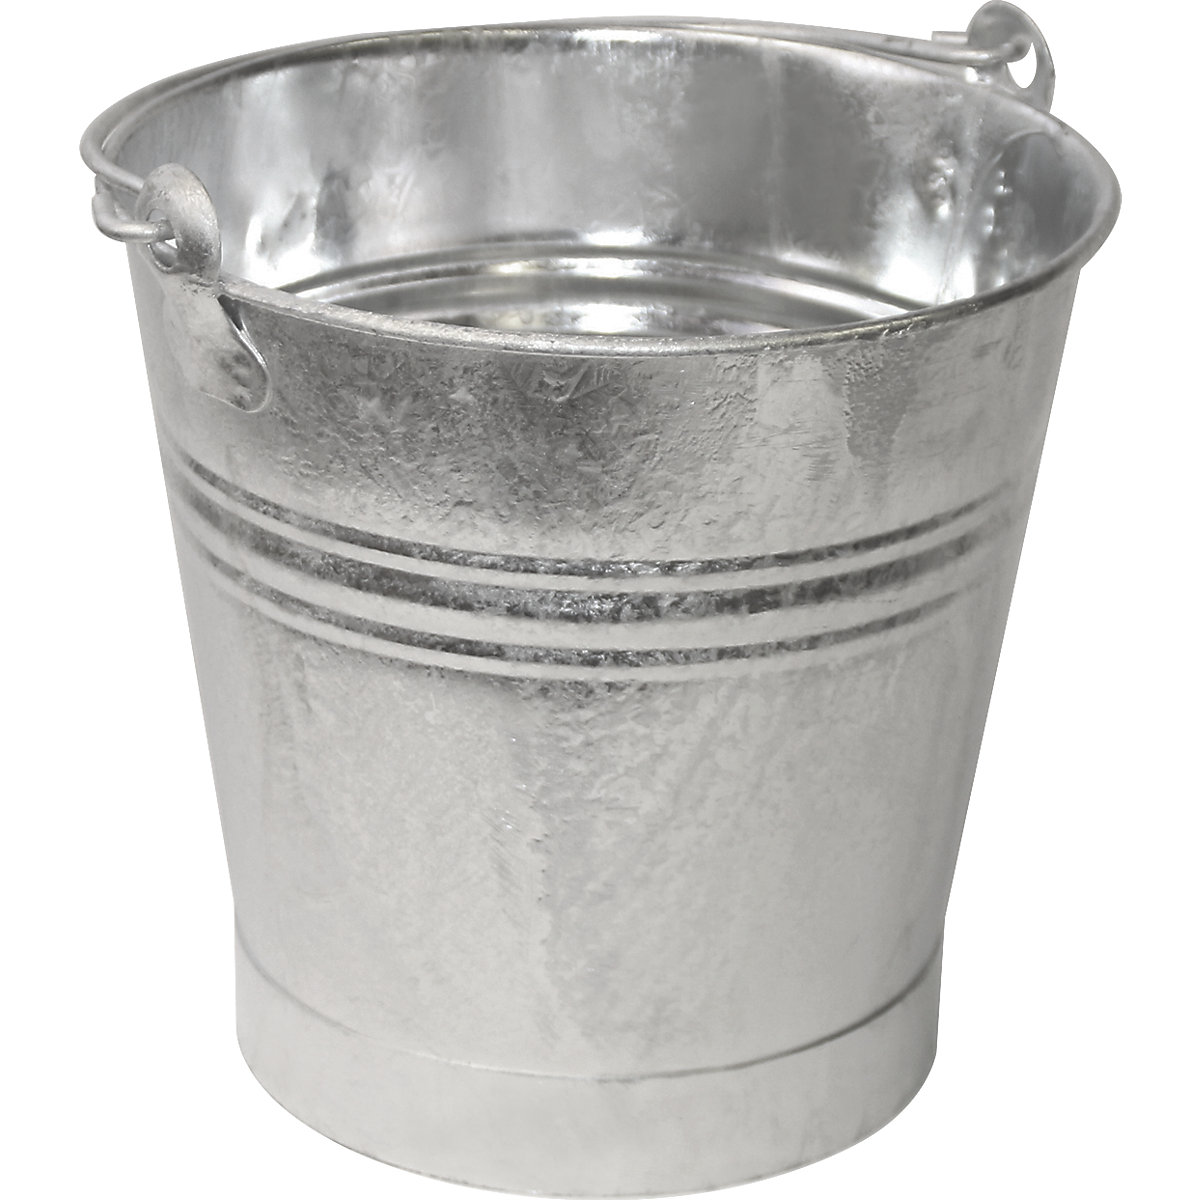 Ocelový kbelík s nosnou rukojetí, nepropustný pro kapaliny